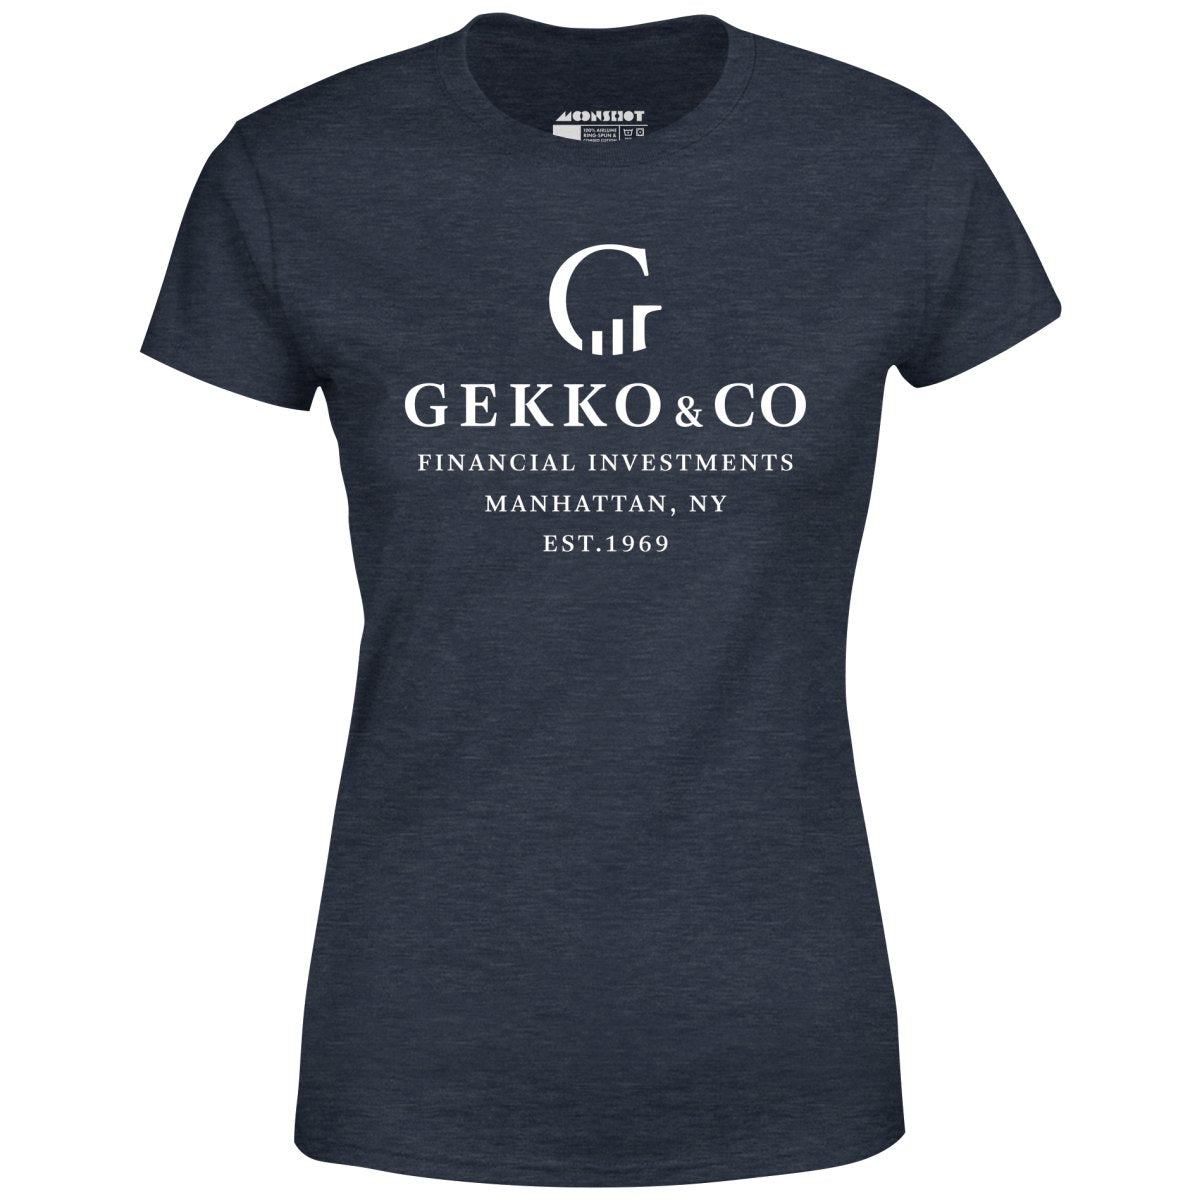 Gekko & Co. Financial Investments - Wall Street - Women's T-Shirt